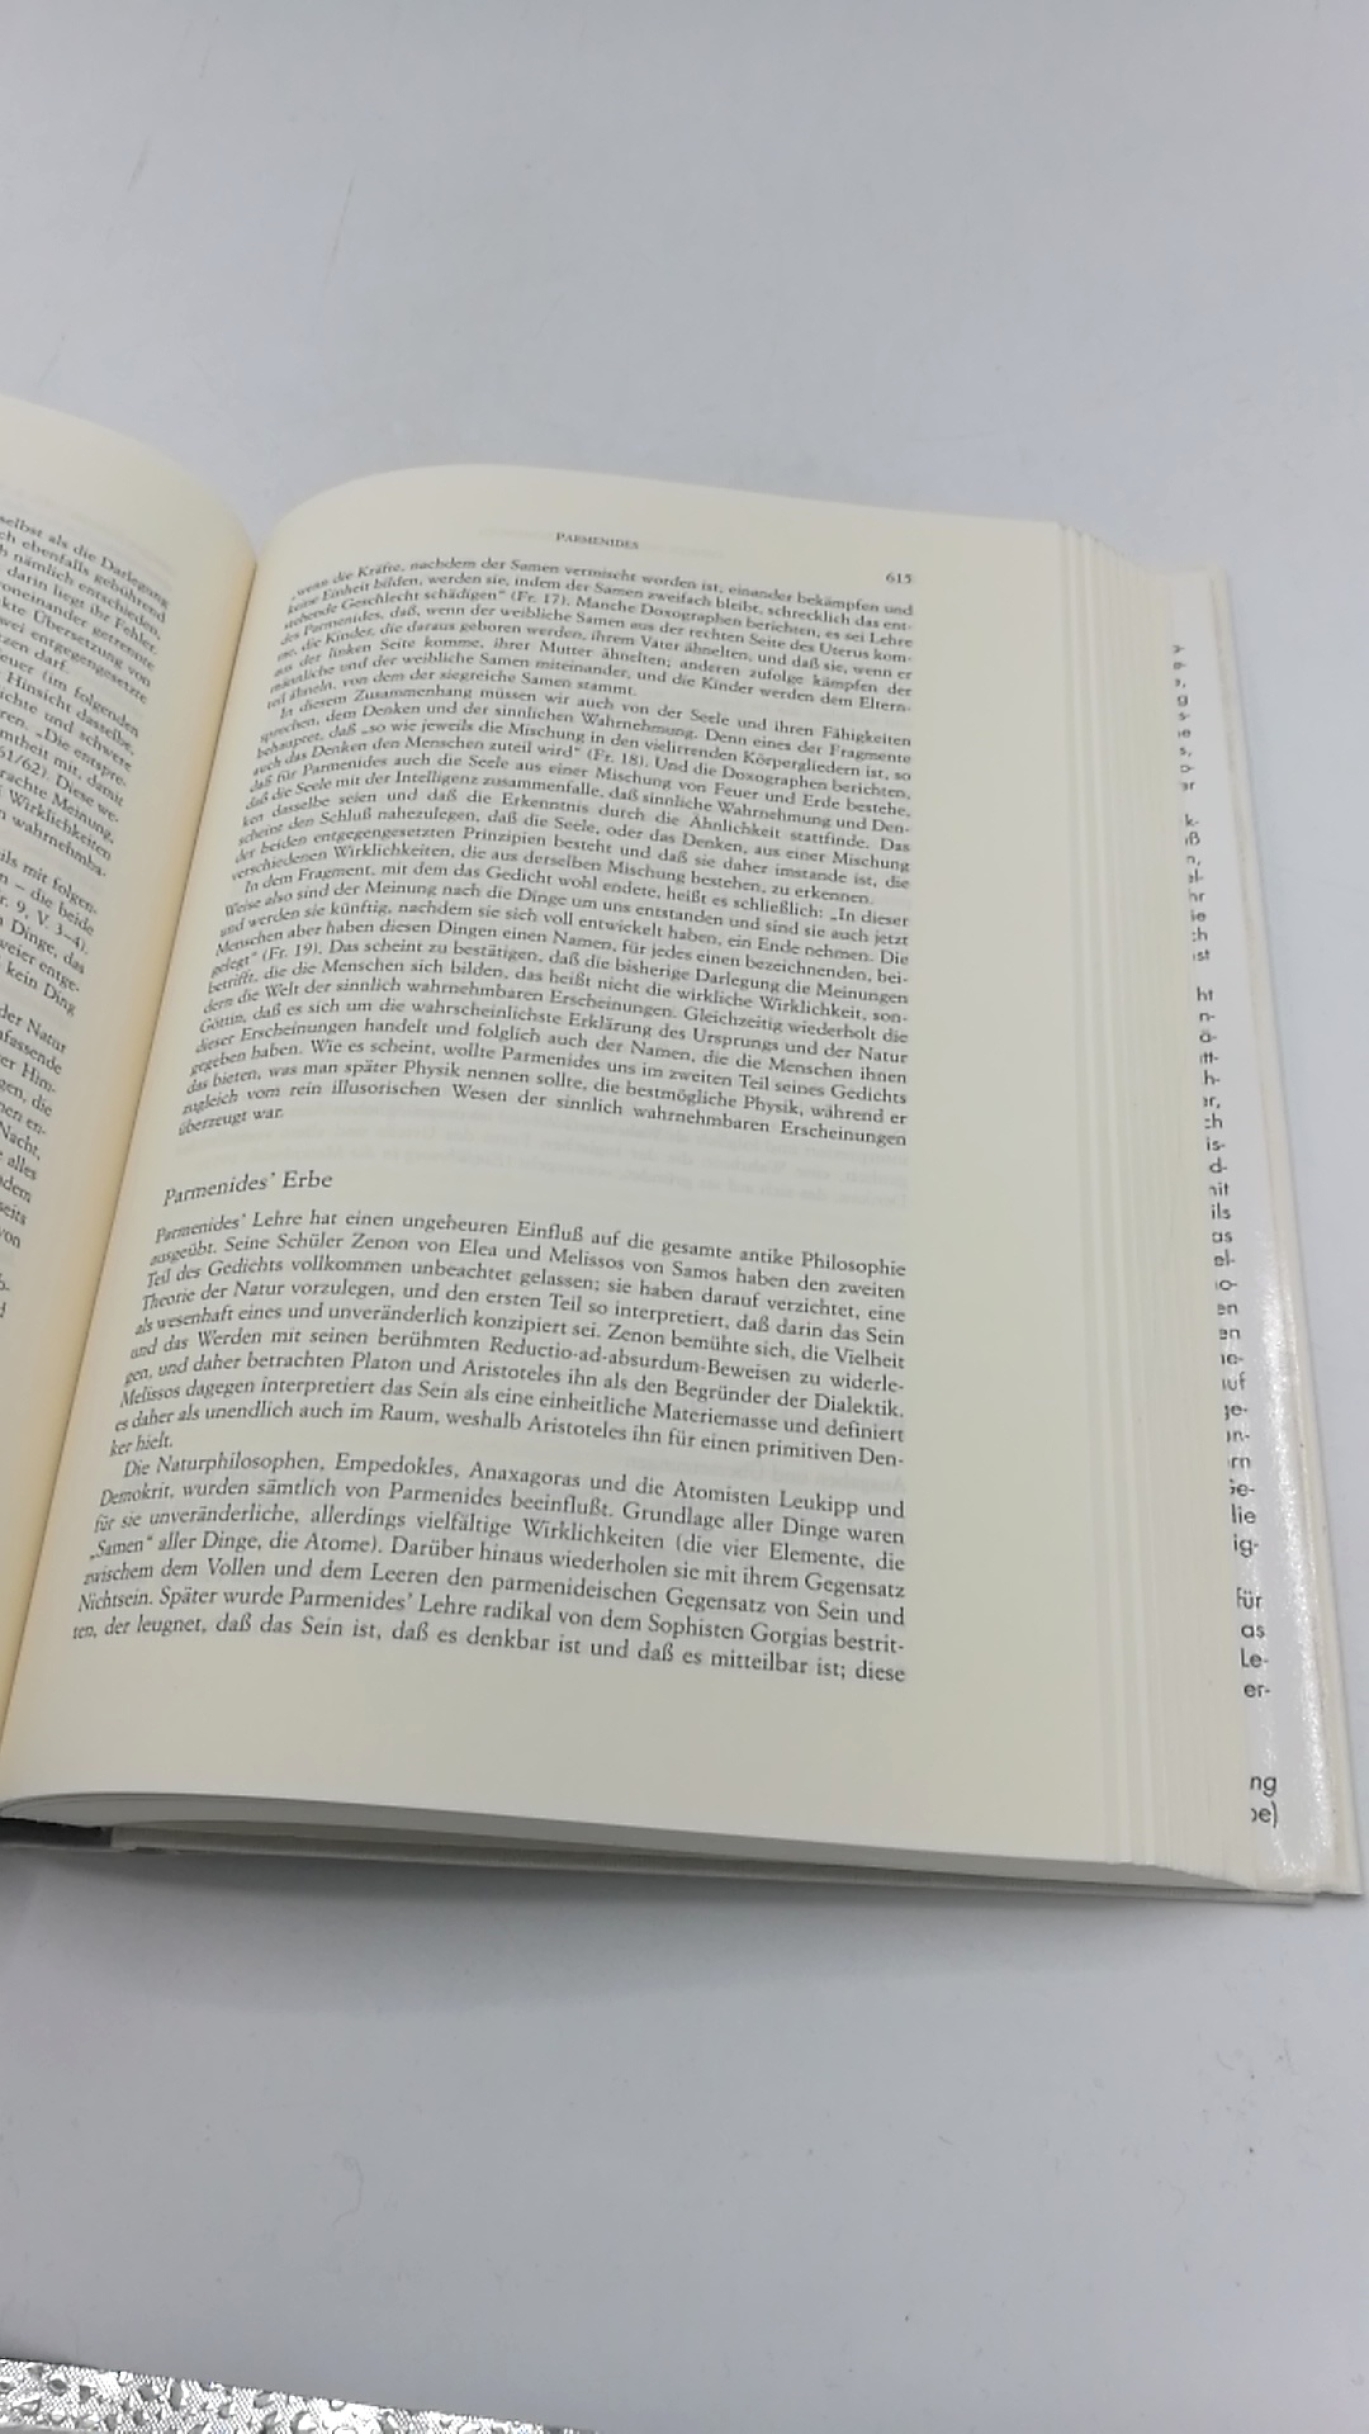 Brunschwig, Jacques (Herausgeber): Das Wissen der Griechen Eine Enzyklopädie